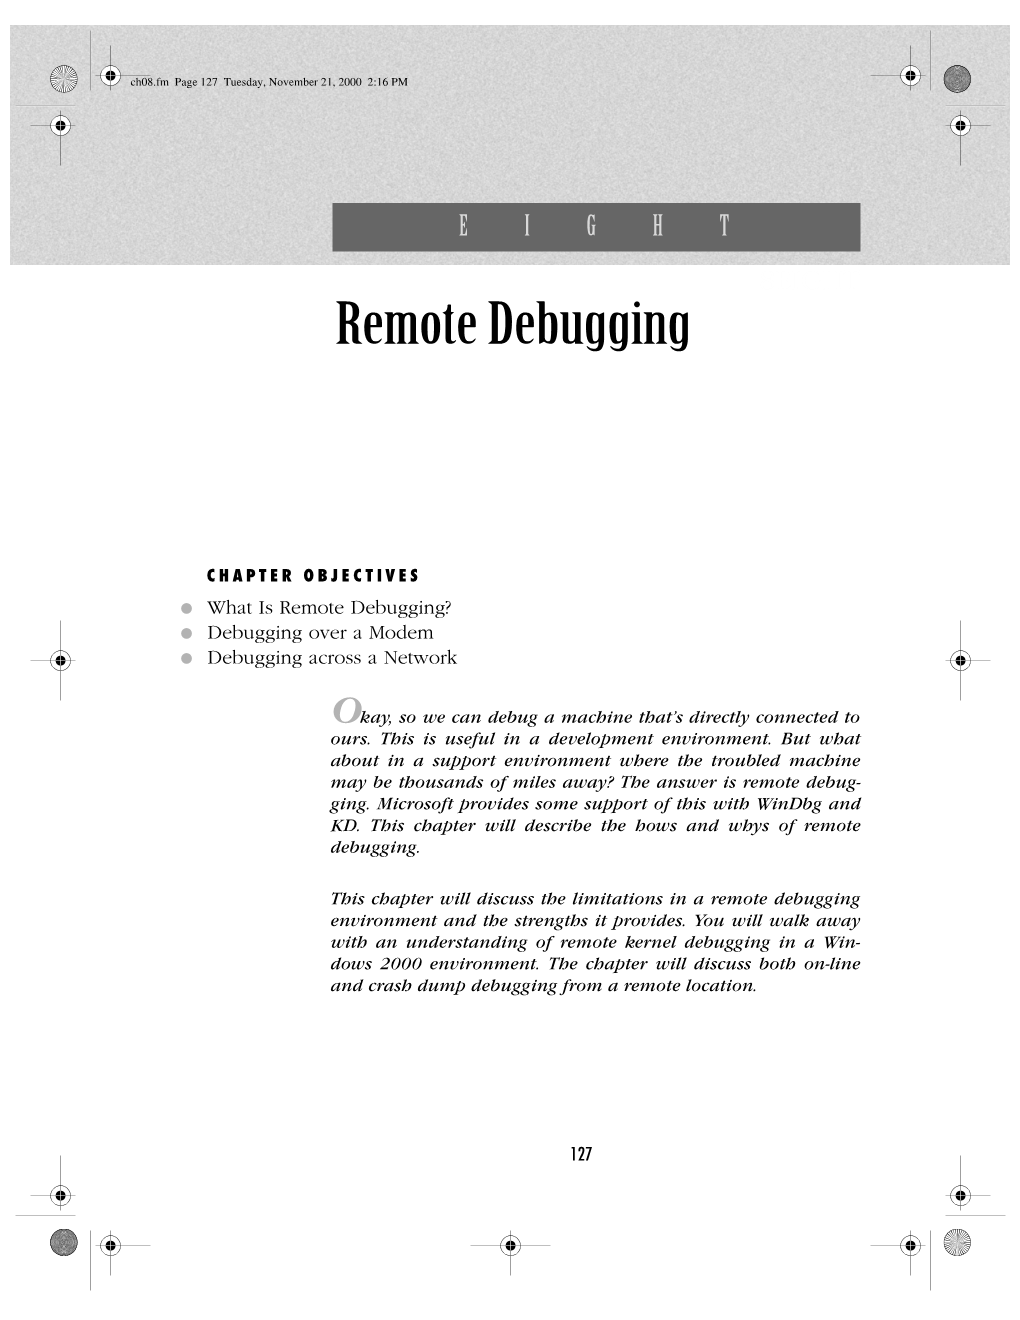 Remote Debugging